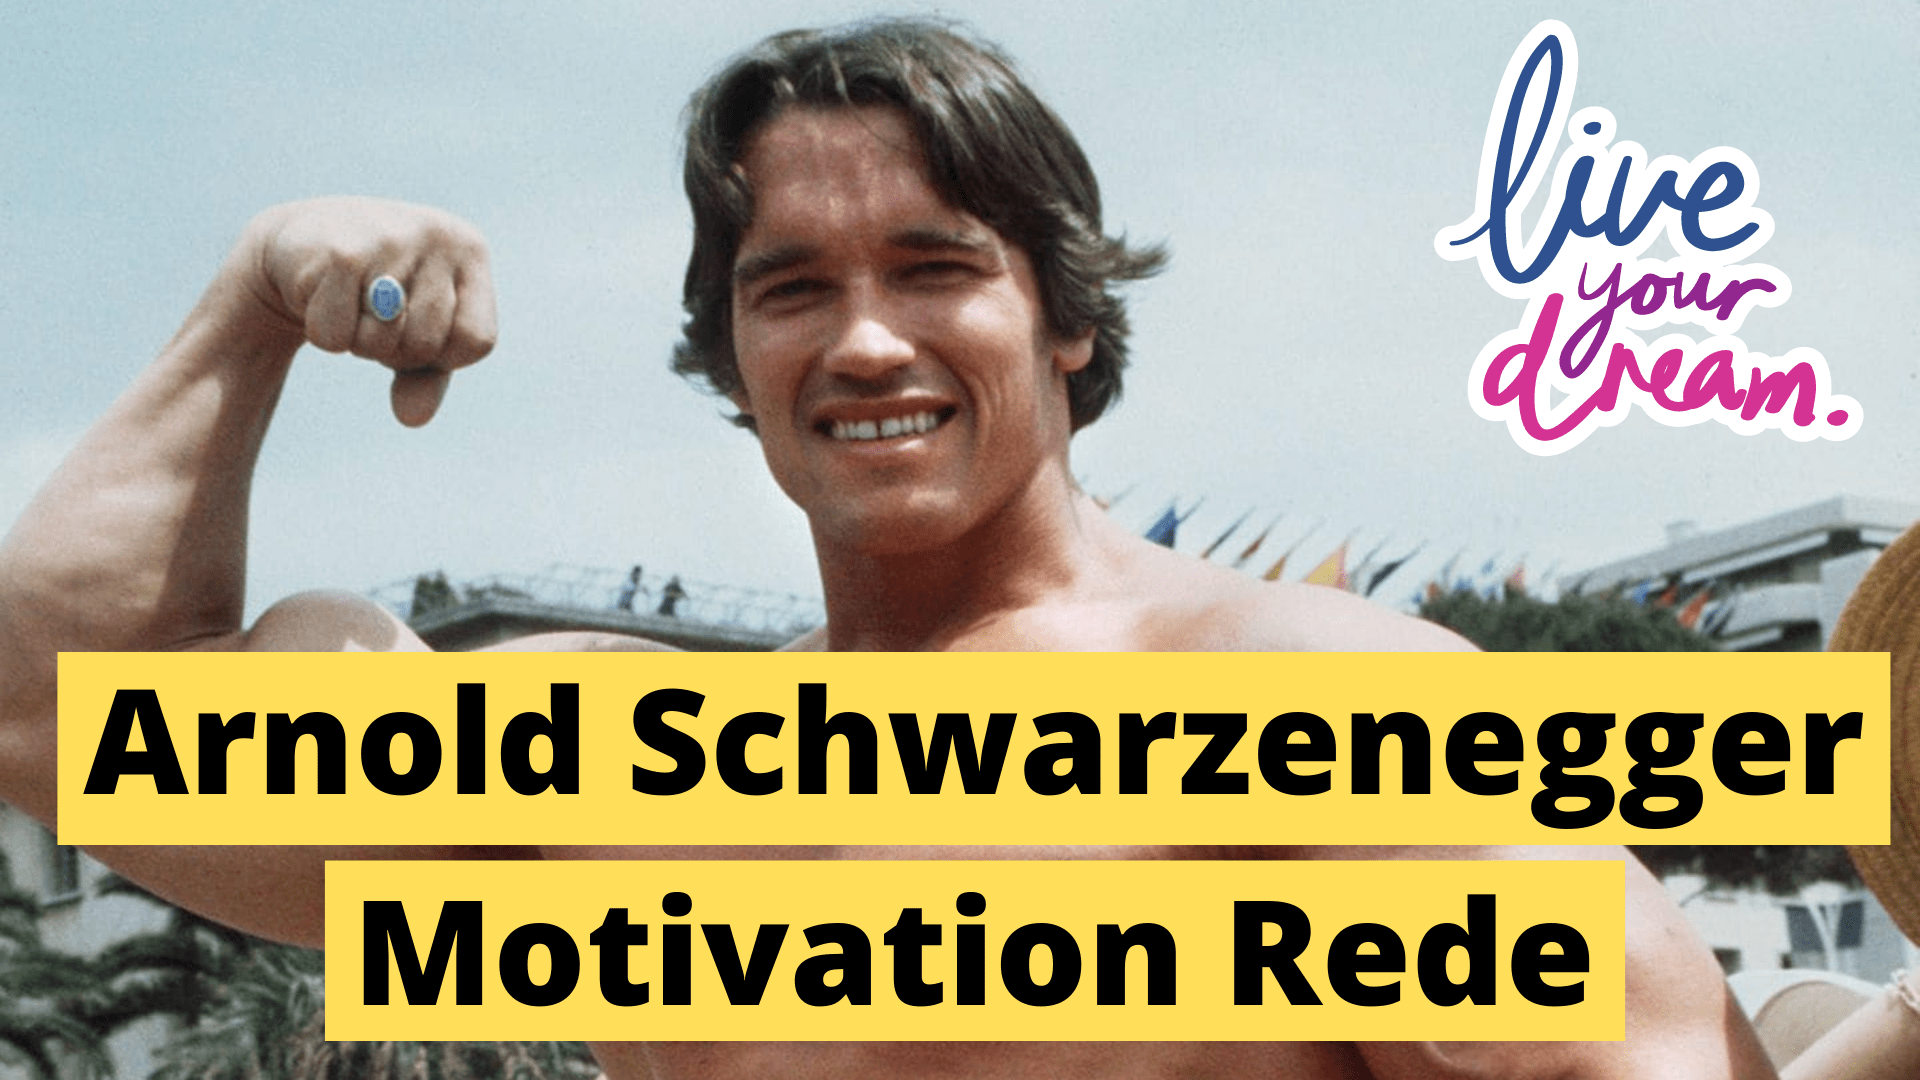 Arnold Schwarzenegger - Motivation Rede in Deutsch